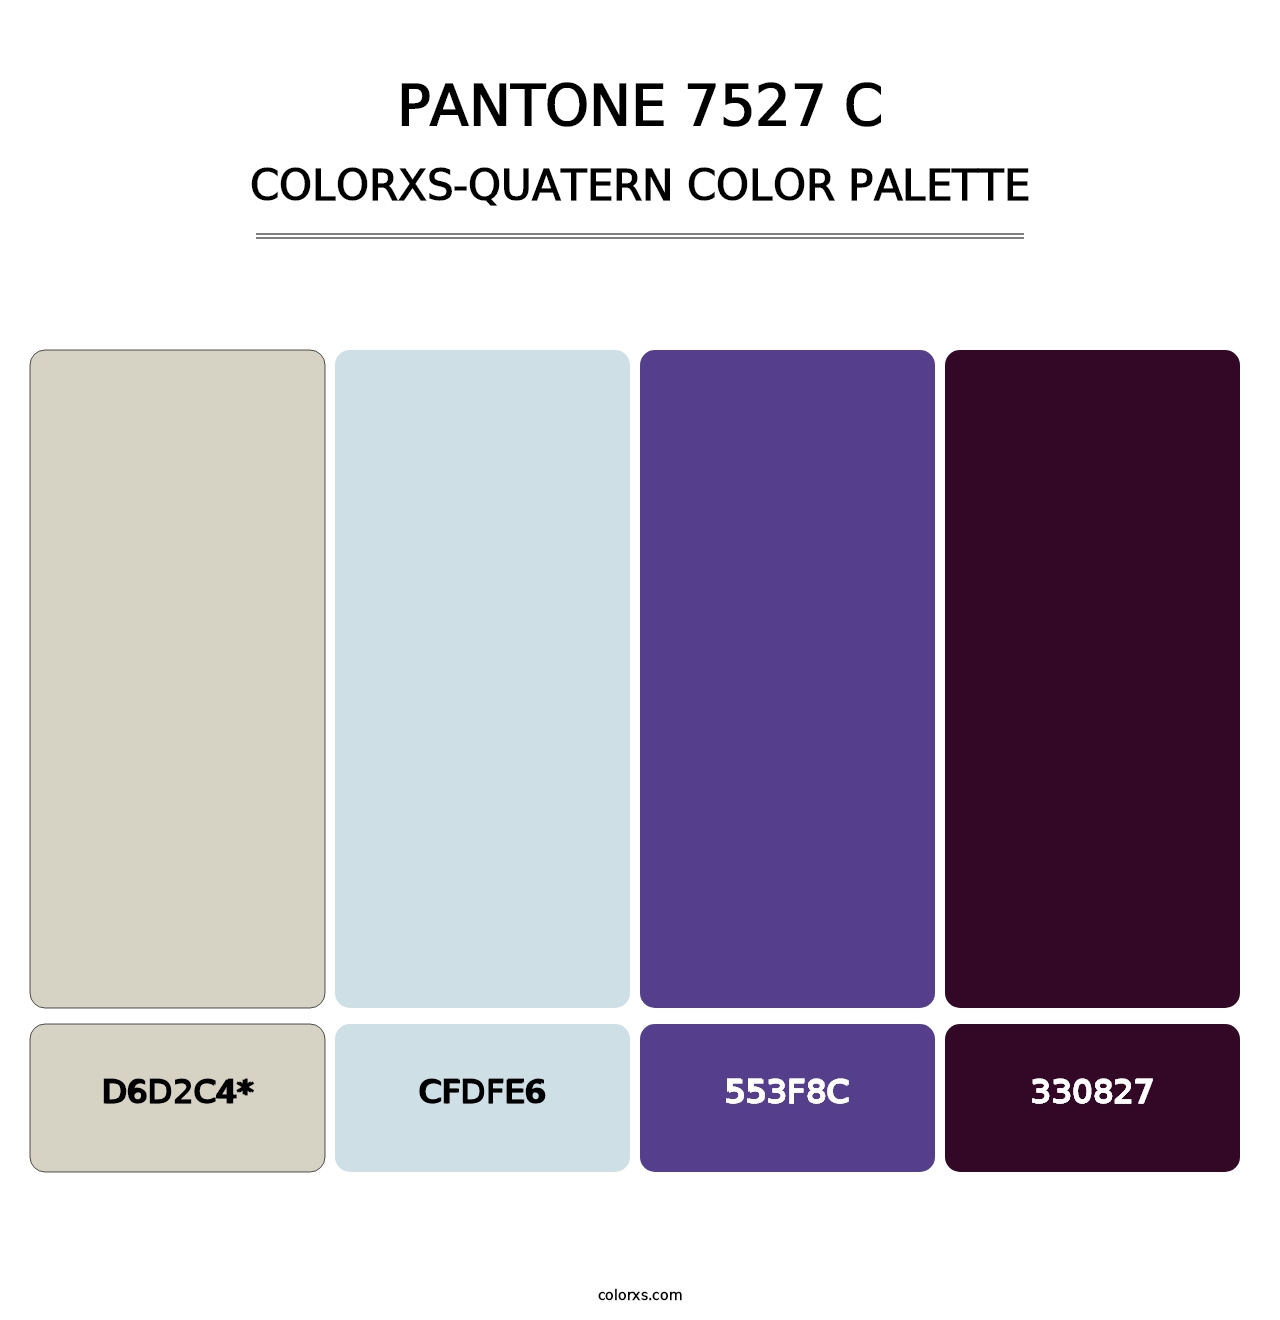 PANTONE 7527 C - Colorxs Quatern Palette